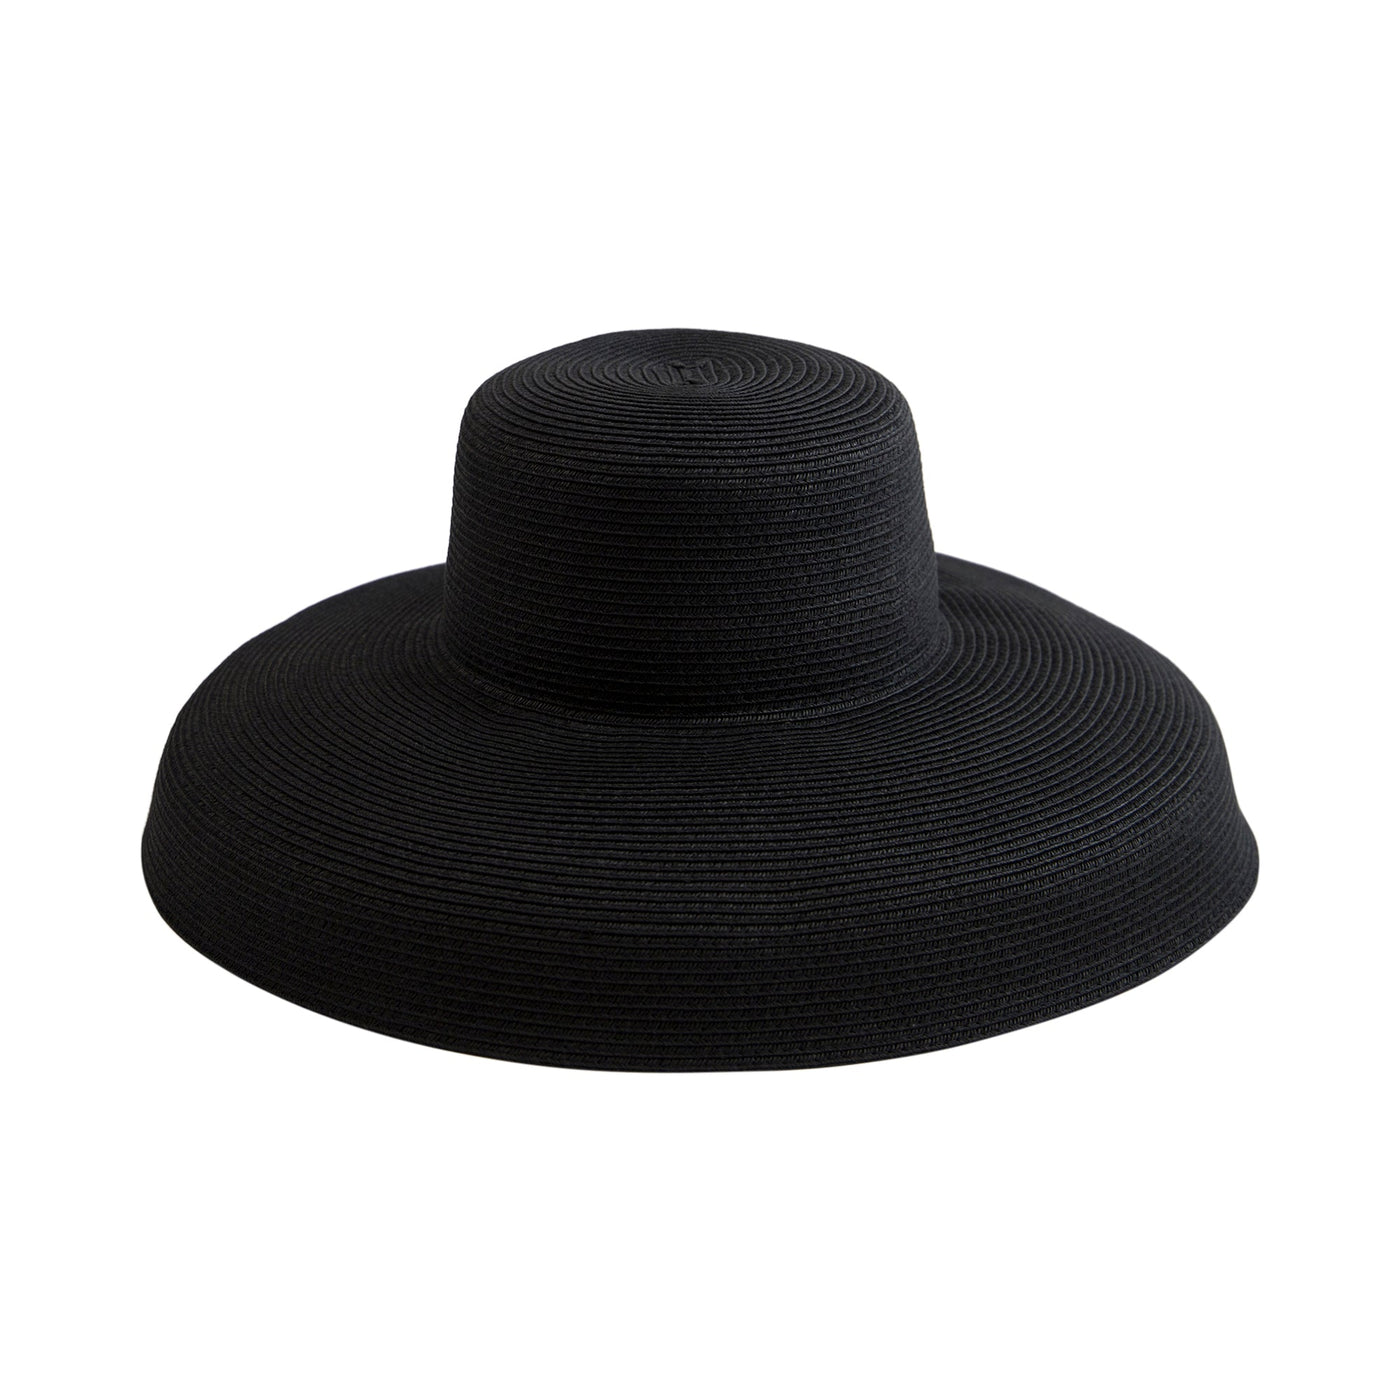 SUN BRIM - Women's Ultrabraid XL Brim Hat